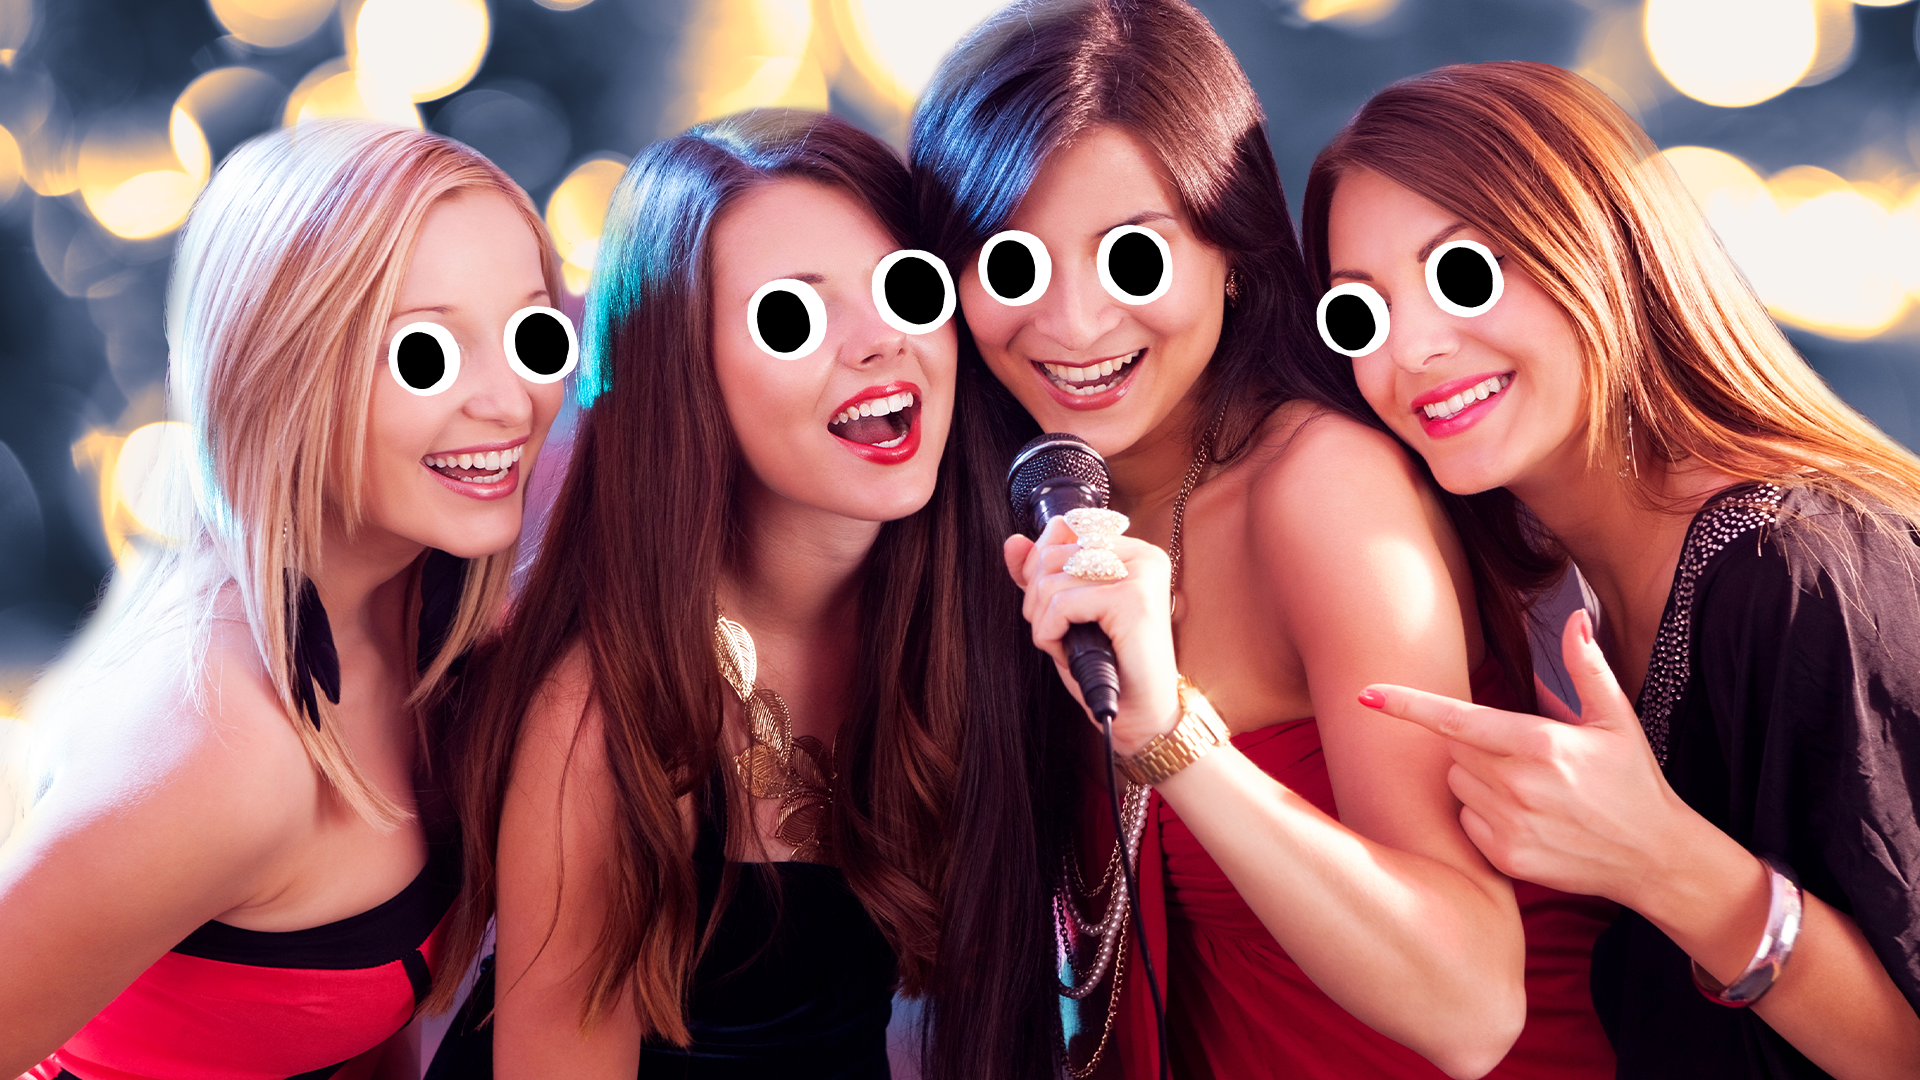 Women singing karaoke together